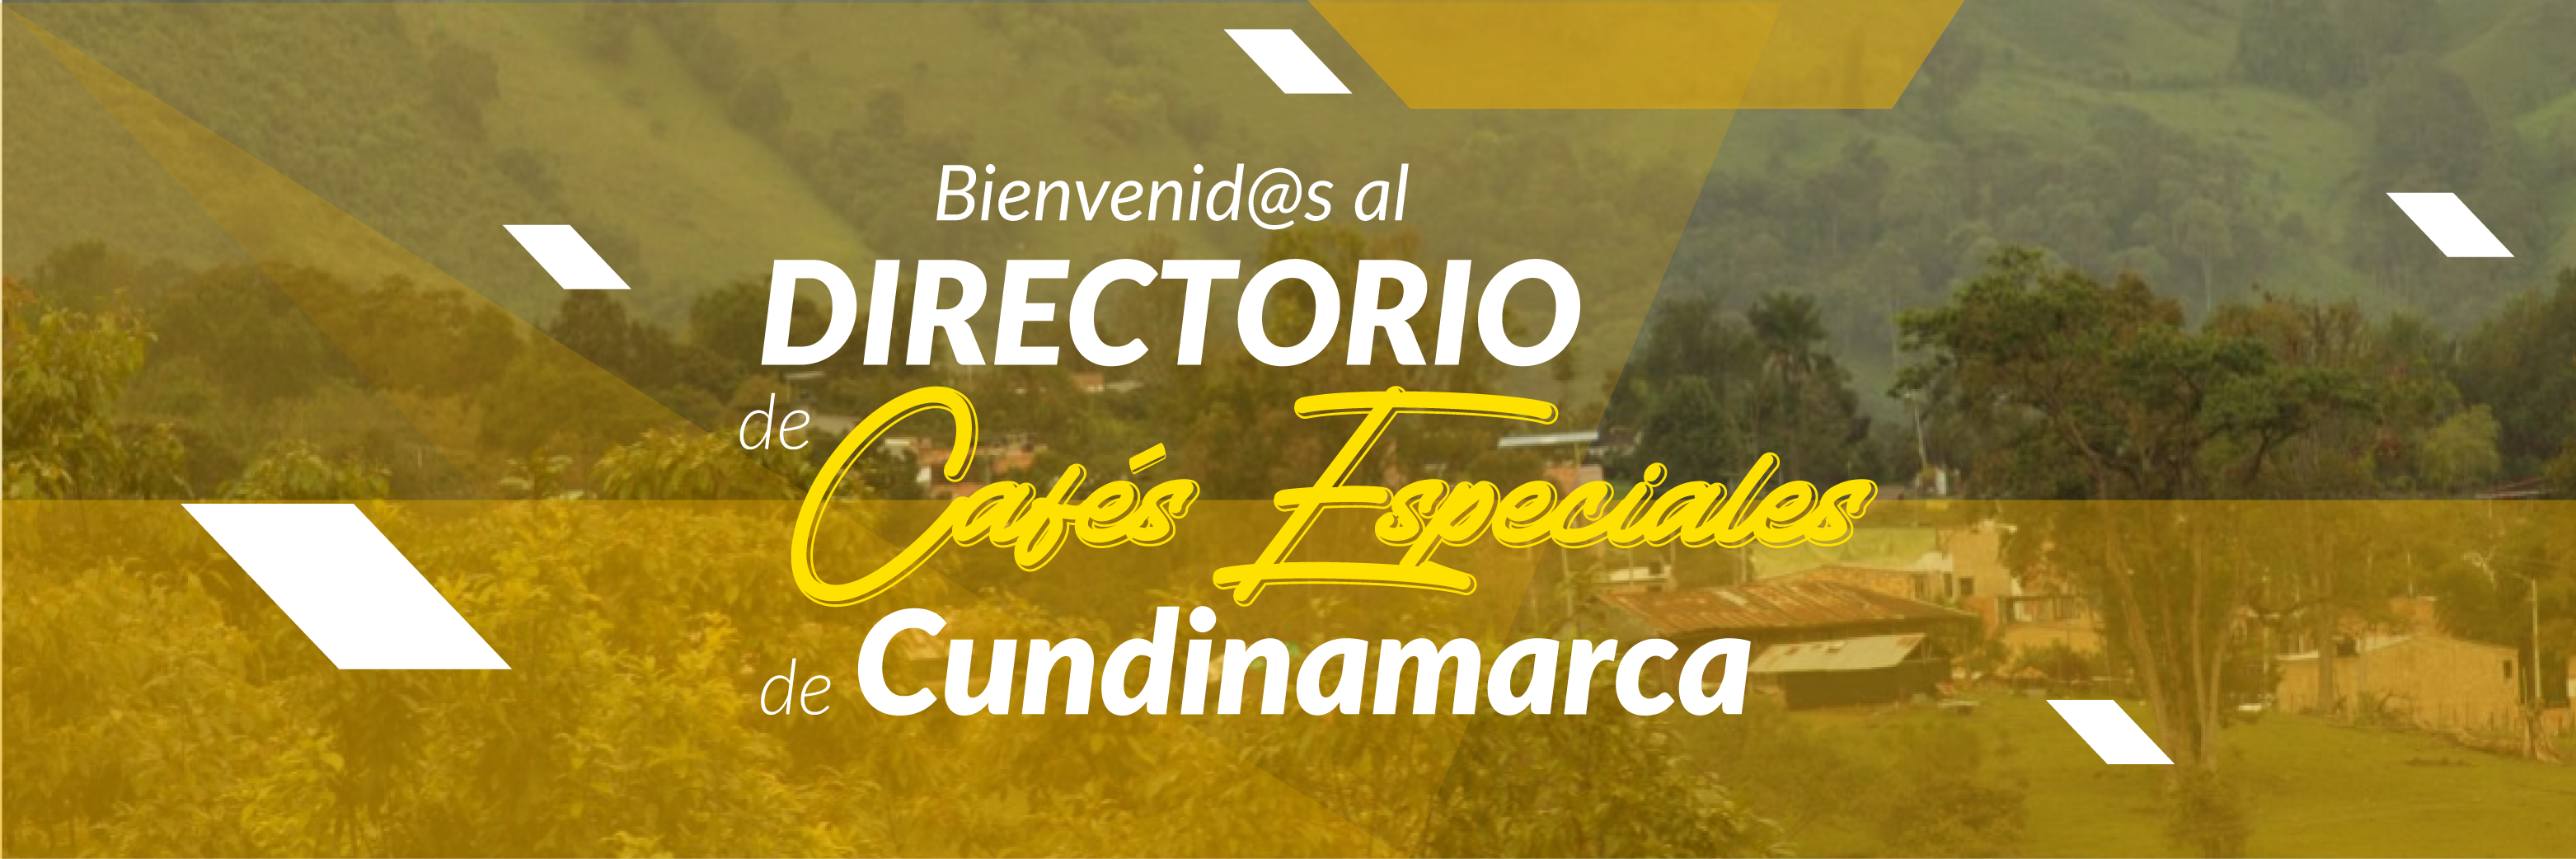 Bienvenido al directorio de cafés especiales de la UCundinamarca